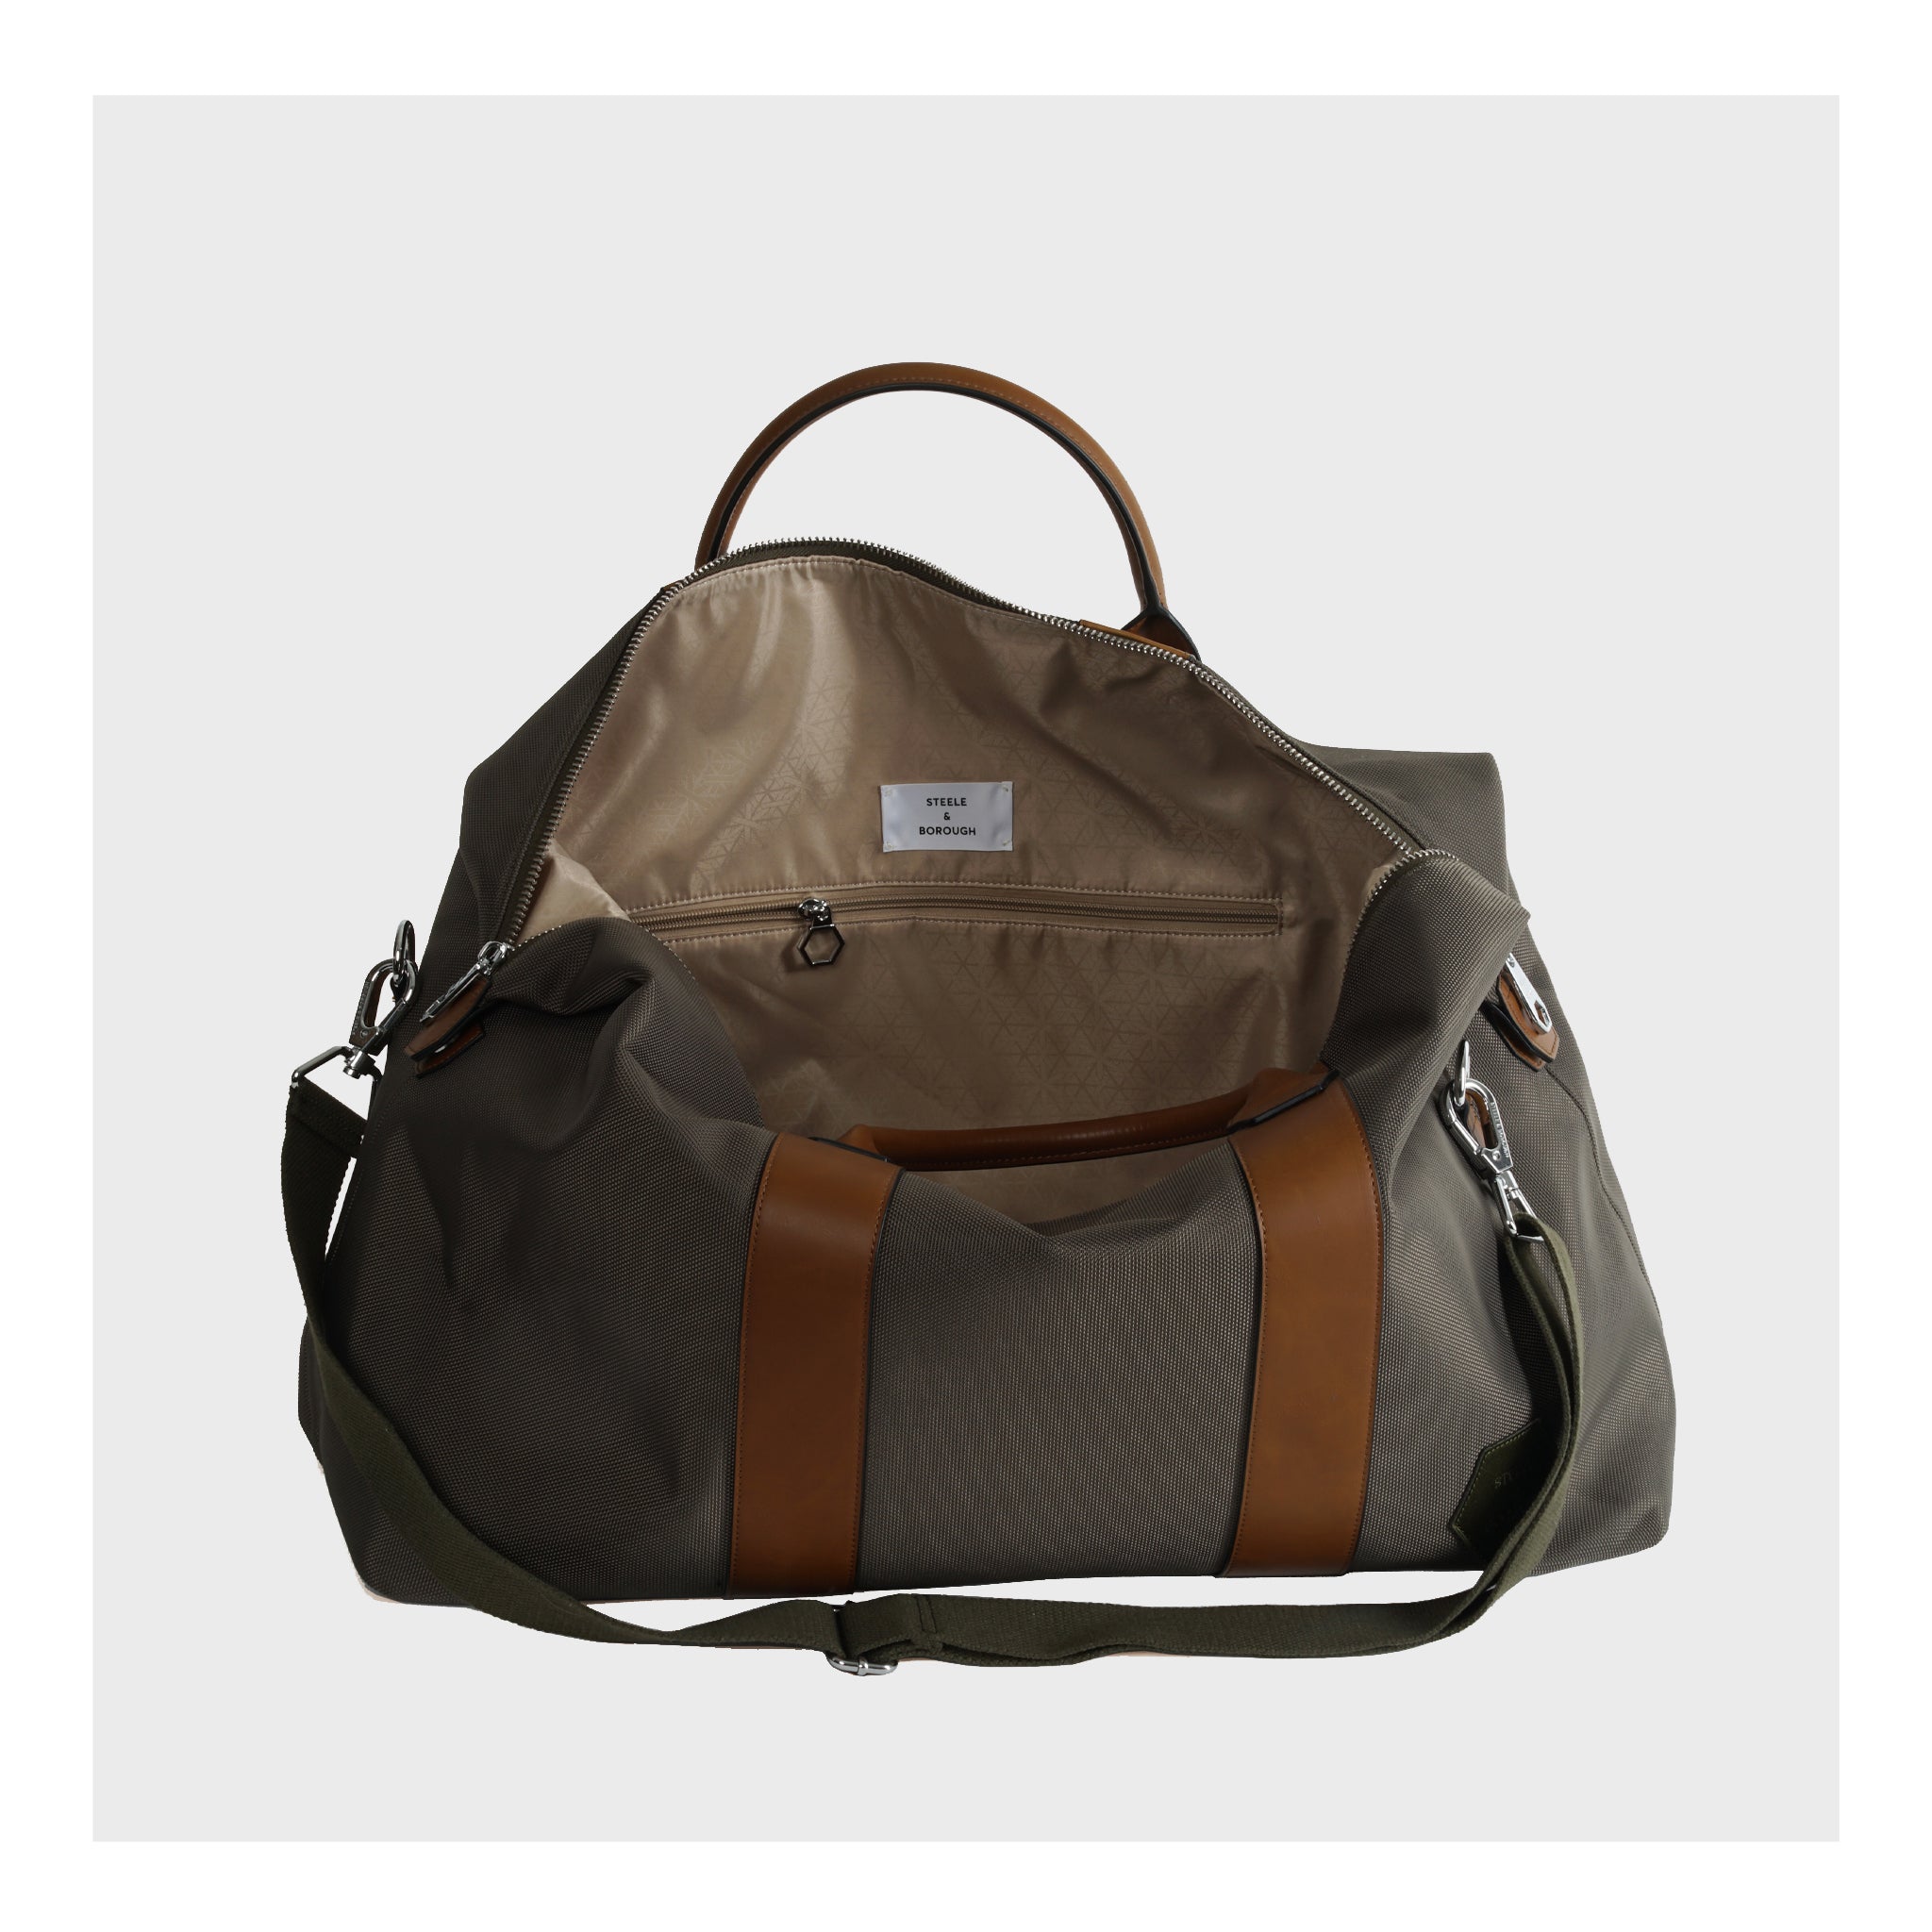 Side profile of Forest Green Weekender Bag with adjustable shoulder strap for comfort